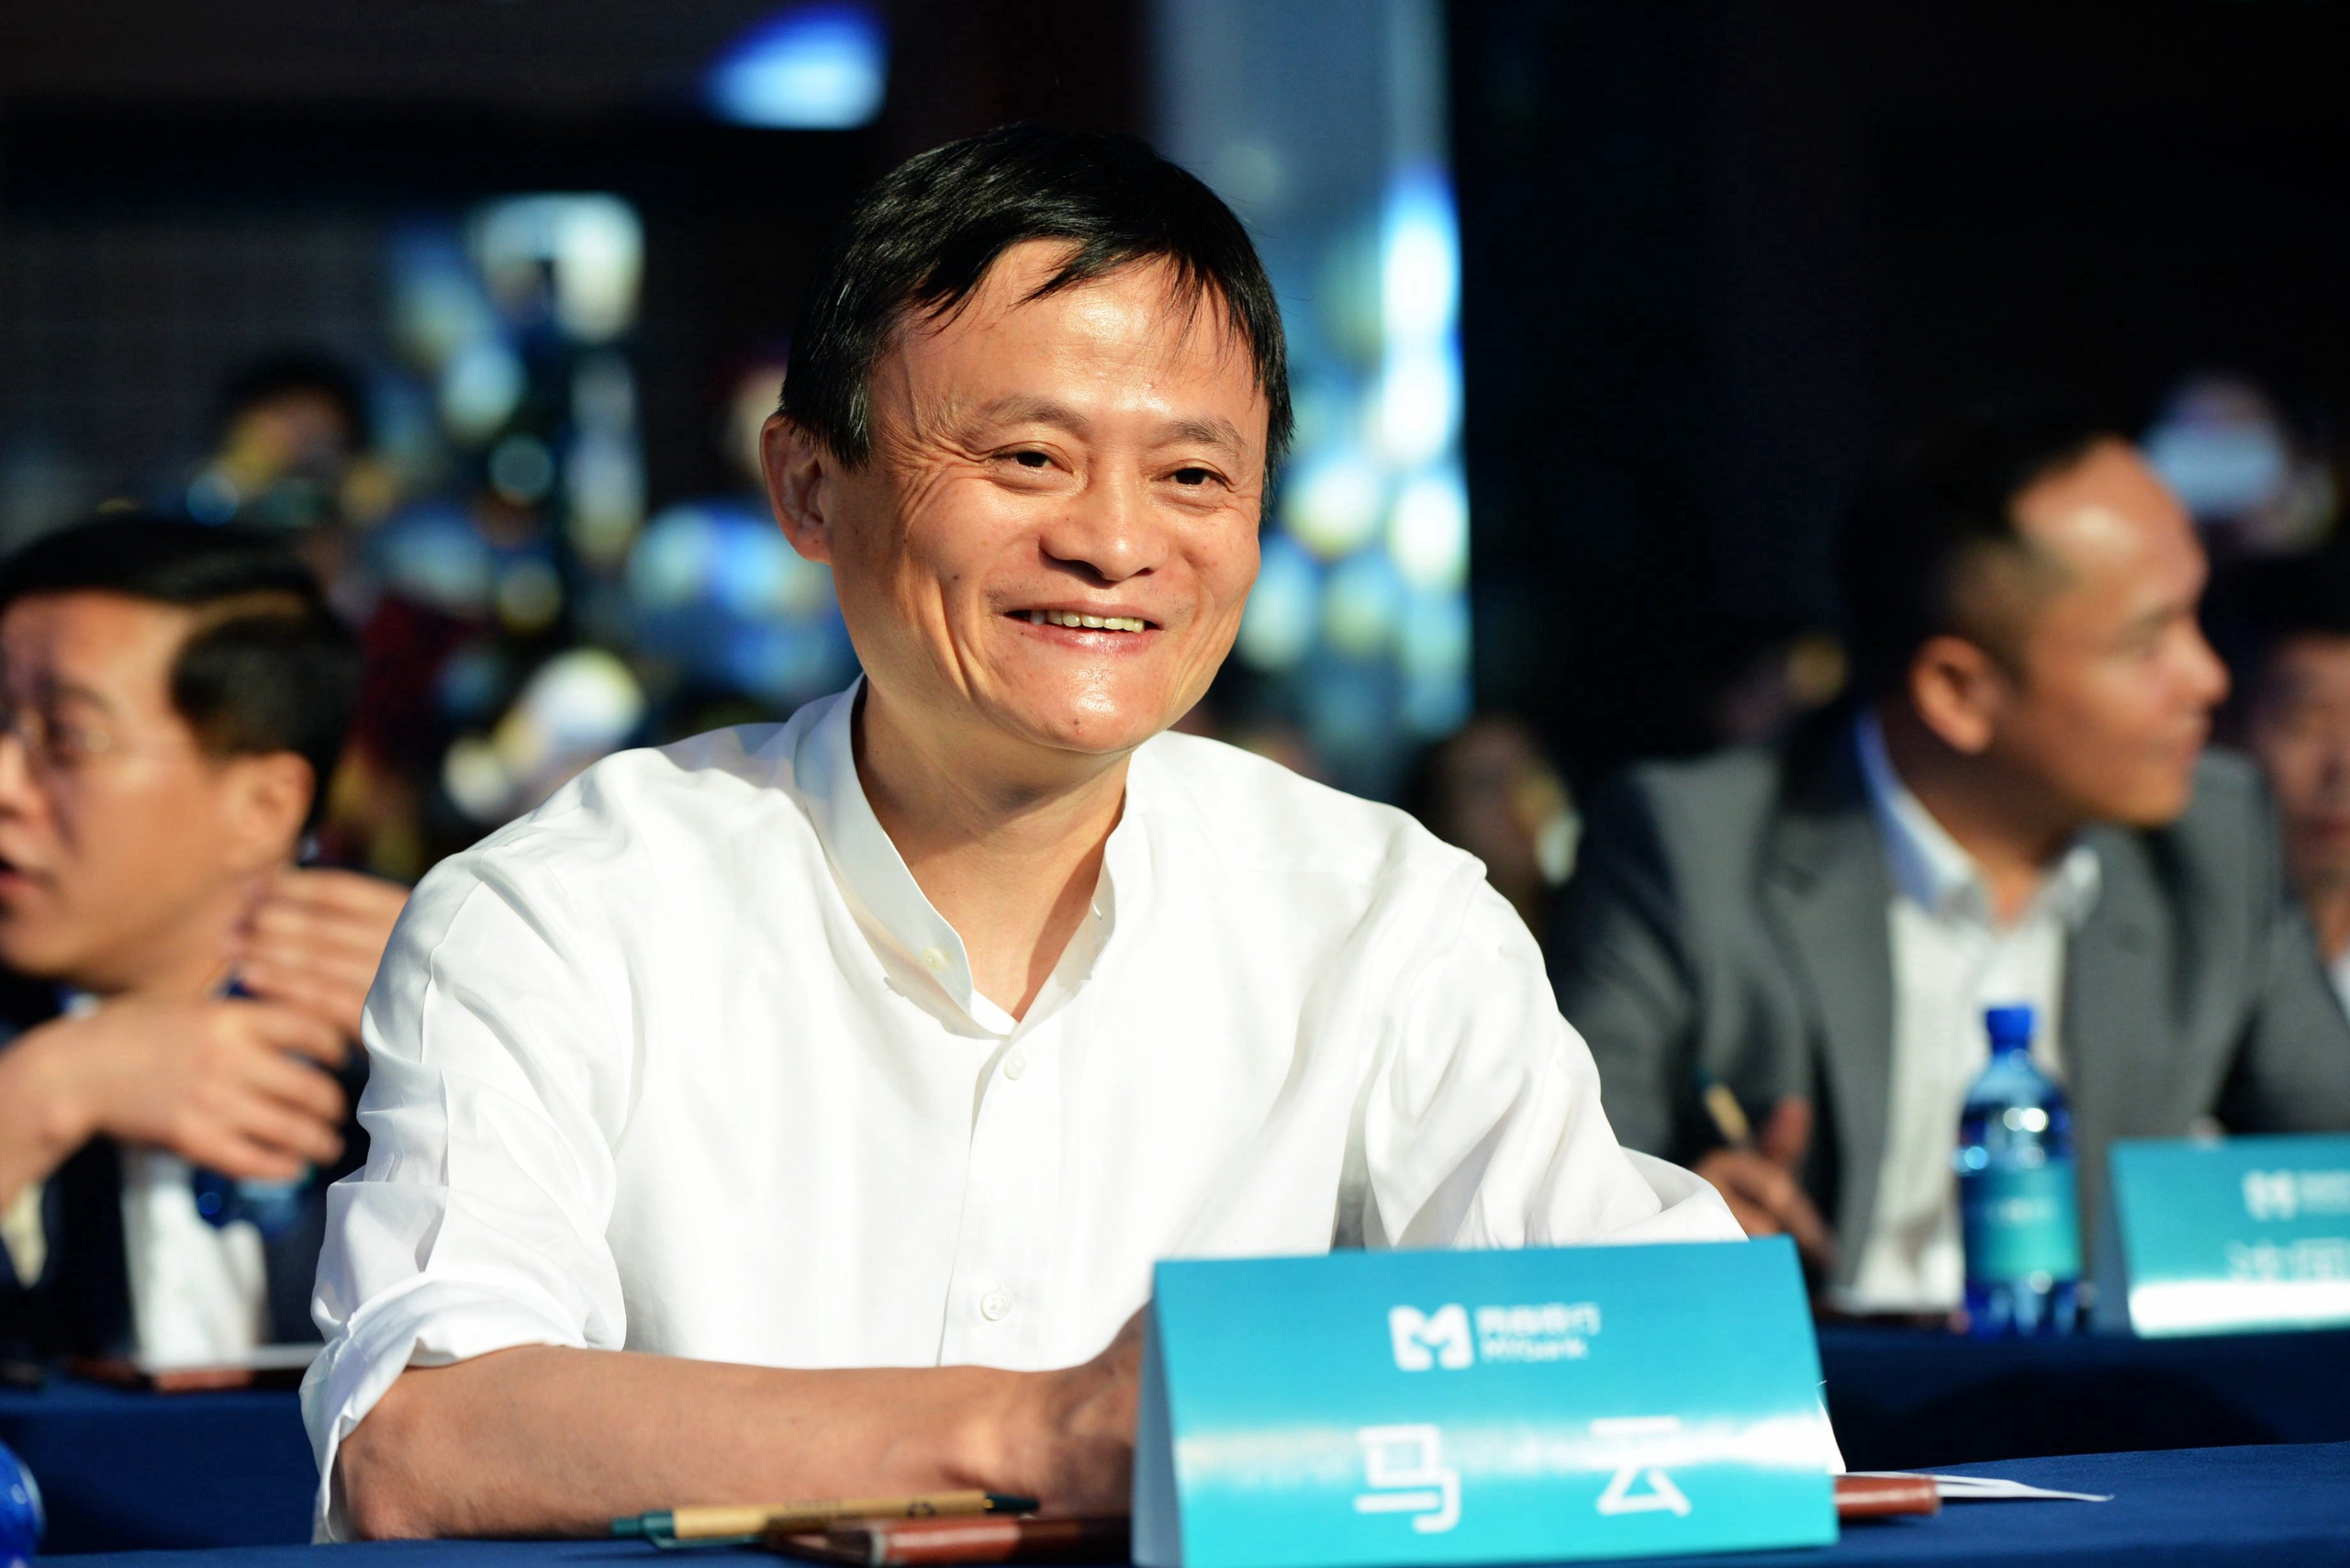 De terugkeer van de Chinese ondernemer en oprichter van verkoopplatform Alibaba is hoogst onverwachts te noemen, zo vindt Chinakenner en maker van BNR's Chinapodcast John Boy Vossen. Mogelijk heeft het te maken met een verzoeningspoging van de Chinese premier Li Qiang.